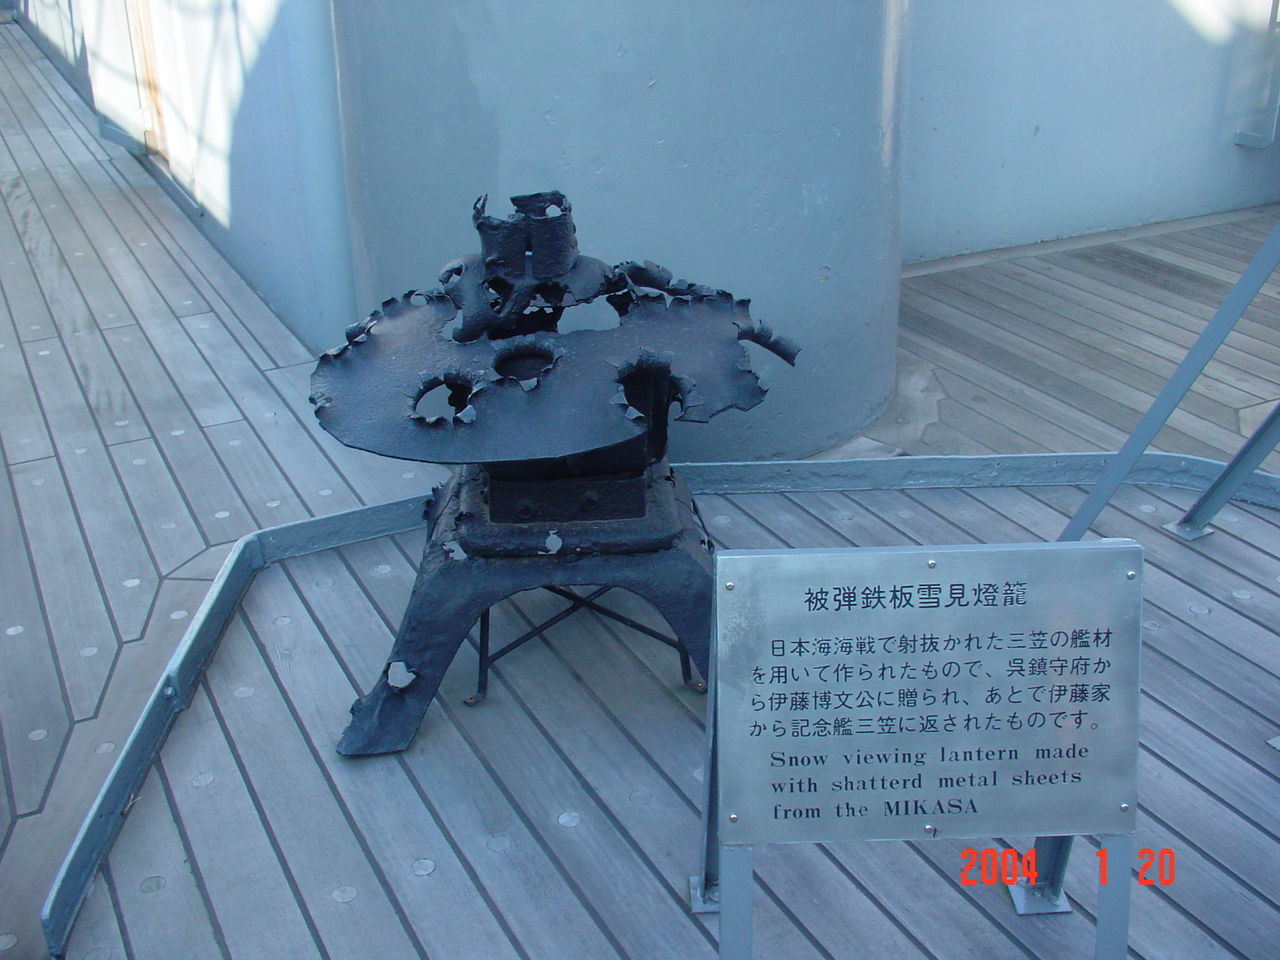 使用三笠號海戰被彈鋼材製成的雪見燈籠